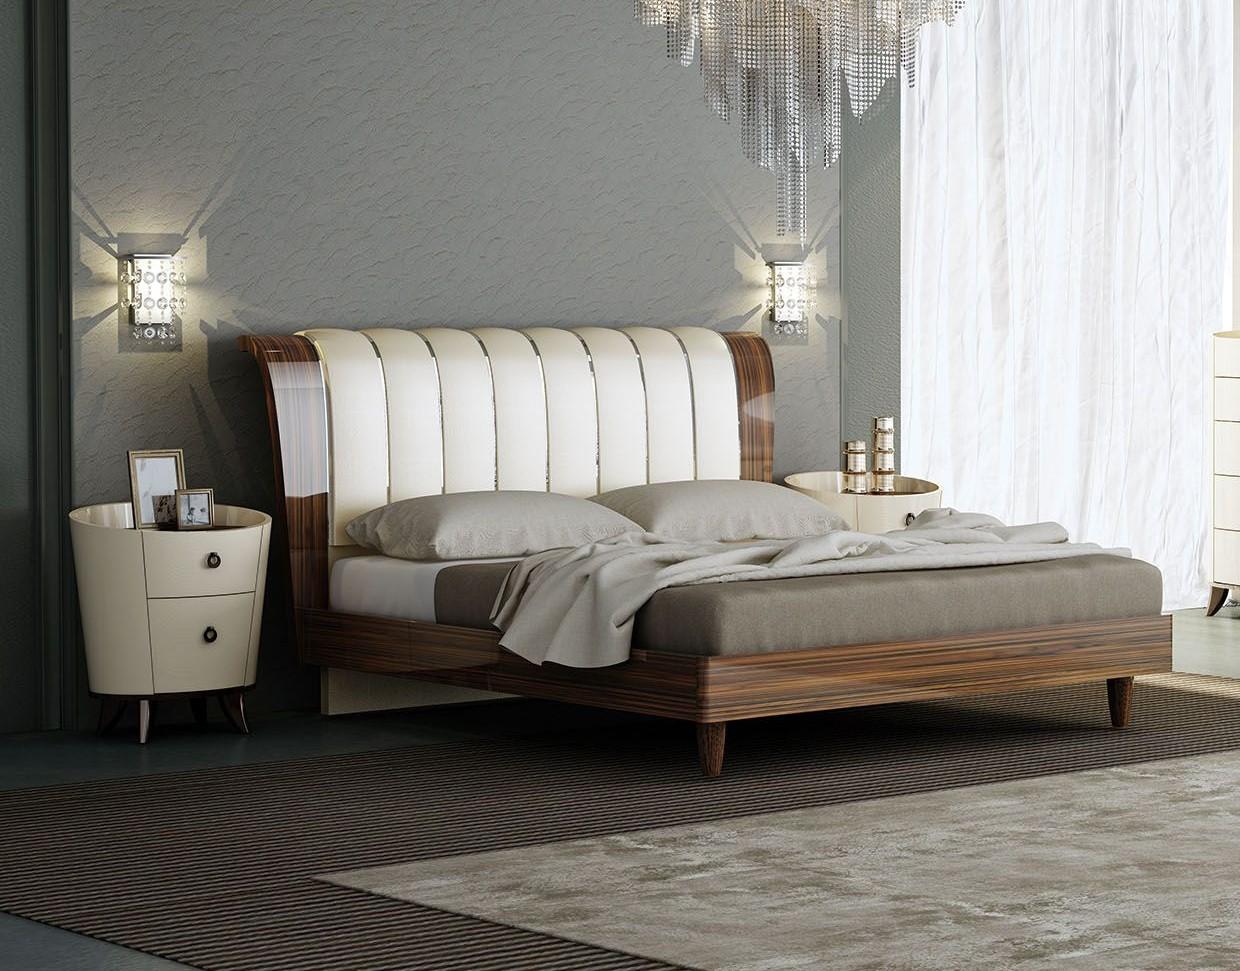 

                    
American Eagle Furniture P101-BED-EK Platform Bedroom Set Brown/Ivory PU Purchase 
